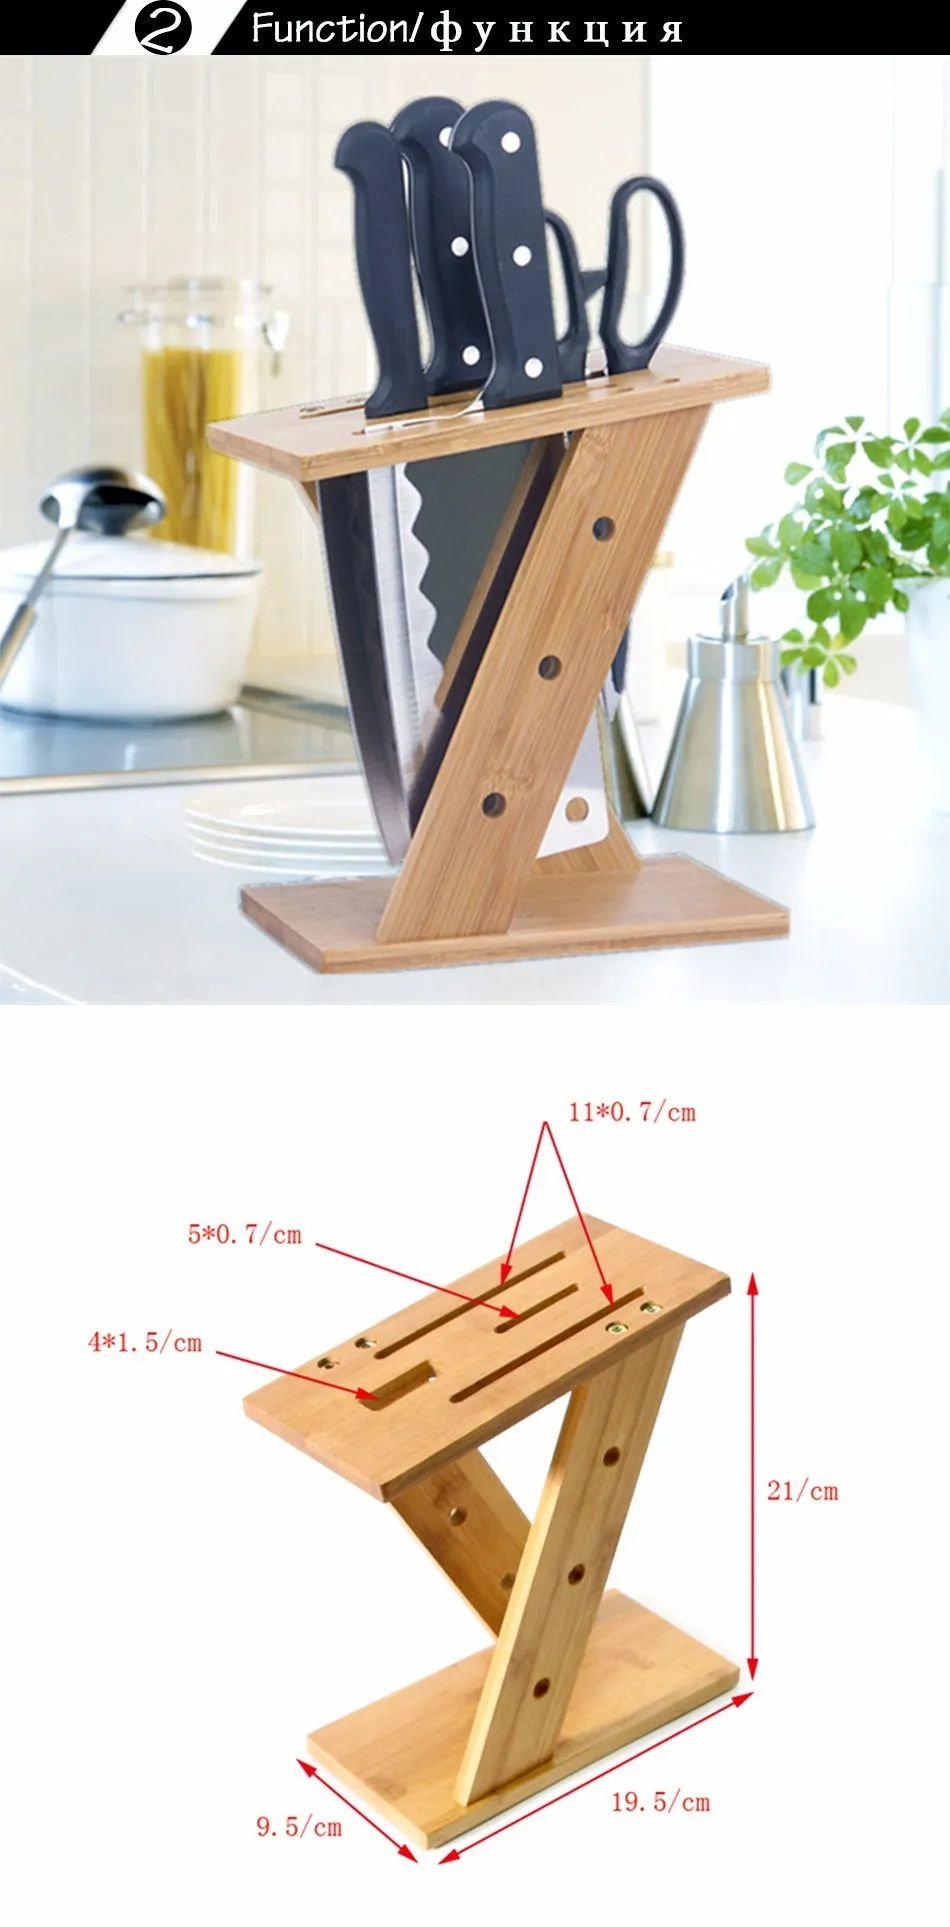 CAKEHOUD Z форма бамбуковая подставка Подставка для кухонных ножей Экологичная натуральная многофункциональная стойка для ножей кухонная стойка для хранения инструментов